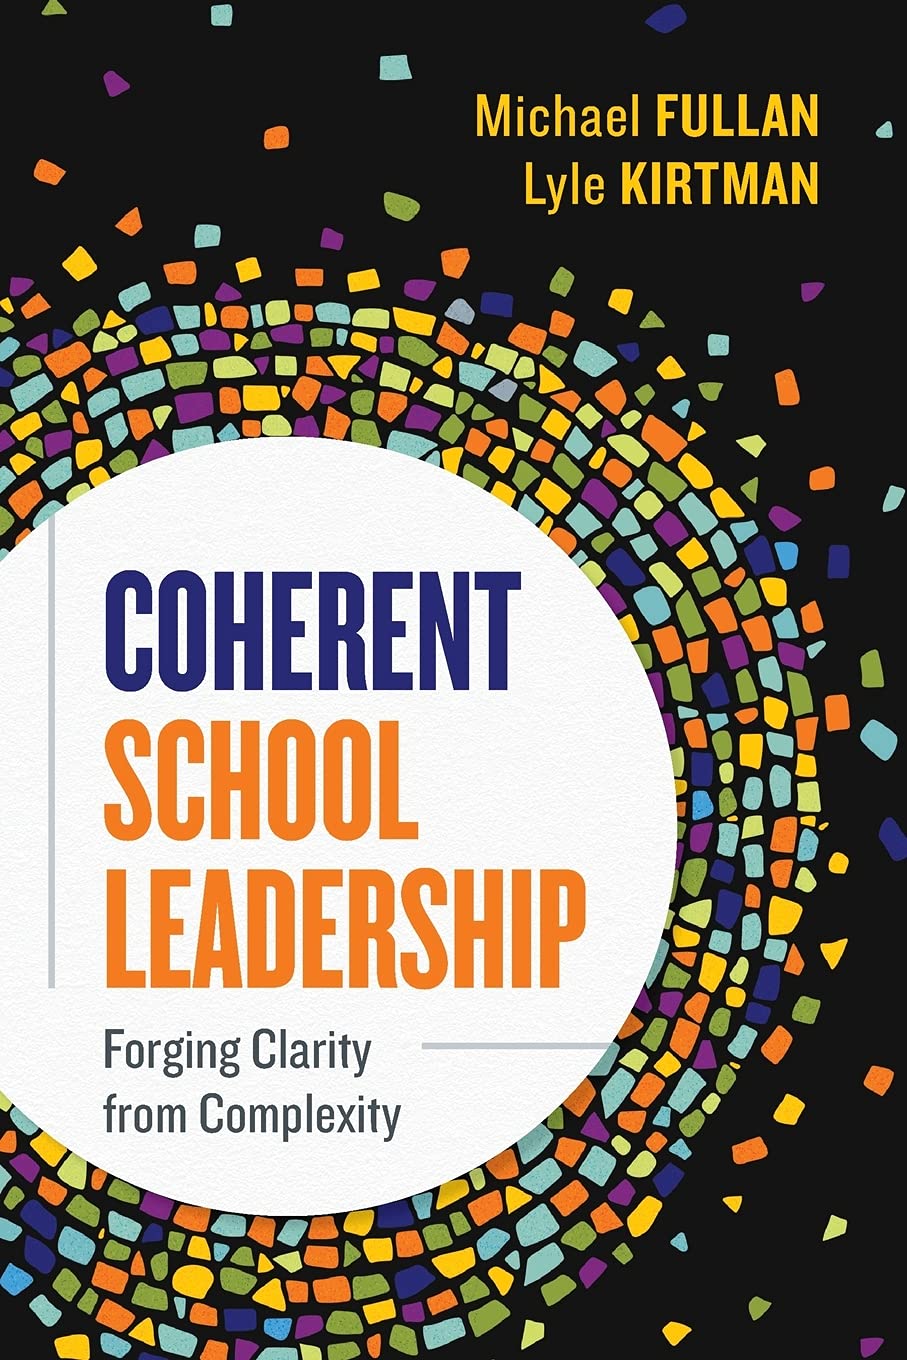 Coherent school leadership